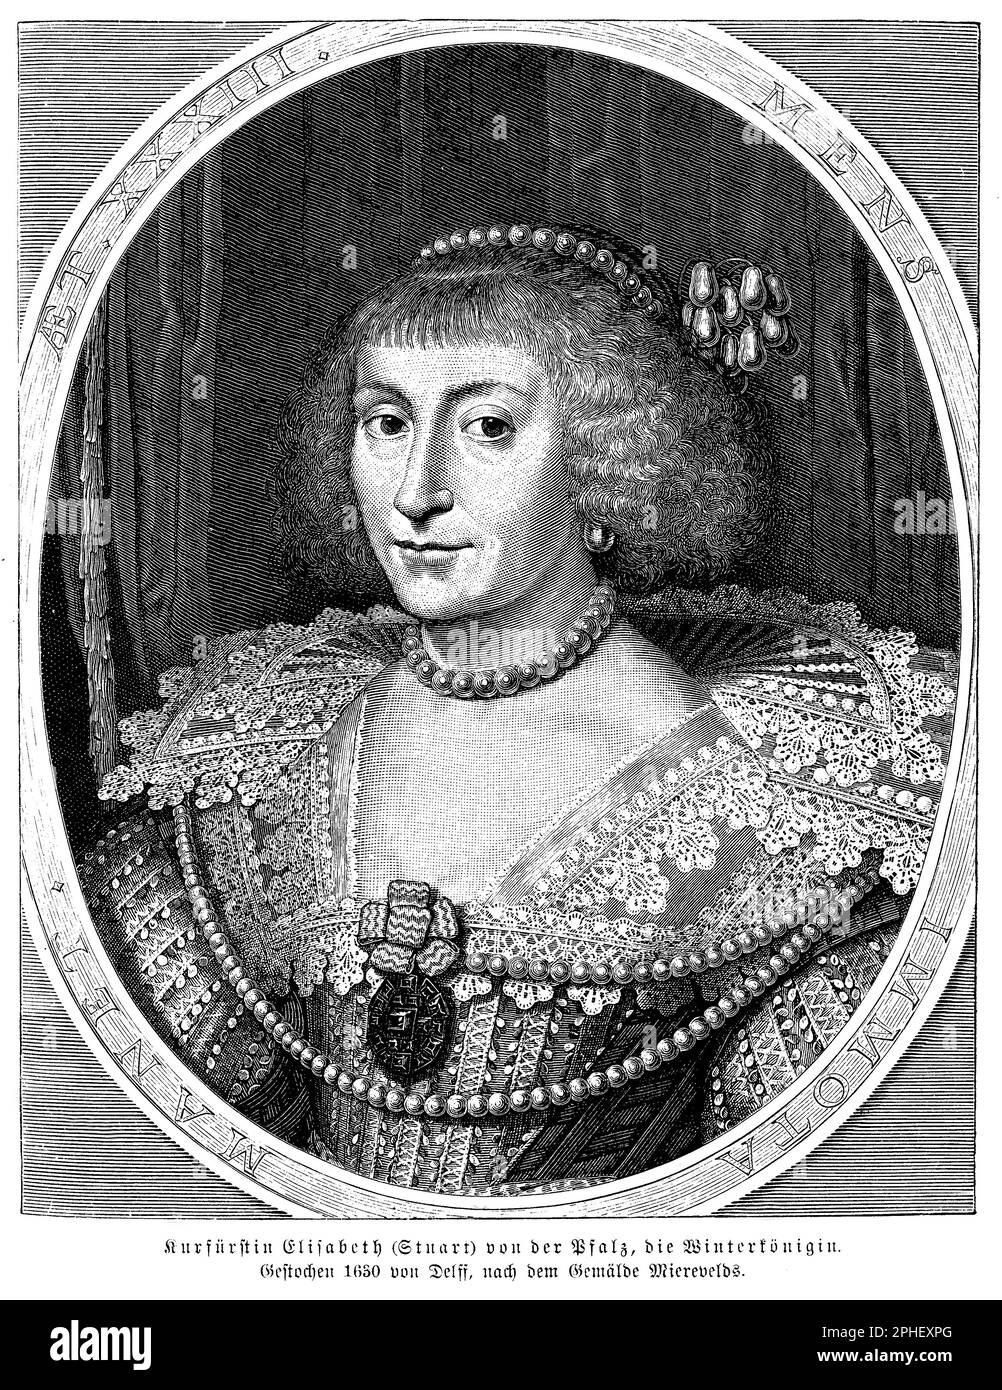 Elizabeth Stuart (1596-1662) était la fille du roi Jacques Ier d'Angleterre et épouse de Frederick V, l'électeur palatin du Rhin. En tant que reine d'hiver de Bohême, elle a joué un rôle crucial dans la révolte de Bohême et a été un symbole important de la résistance protestante pendant les premières années de la guerre de trente ans. Après la défaite et l'exil de son mari, Elizabeth a continué à plaider pour sa cause et a cherché à rallier le soutien à la cause protestante en Europe. Elle a plus tard vécu en exil aux pays-Bas et en Angleterre, où elle est devenue une figure respectée au tribunal de Stuart et une patreuse influente Banque D'Images